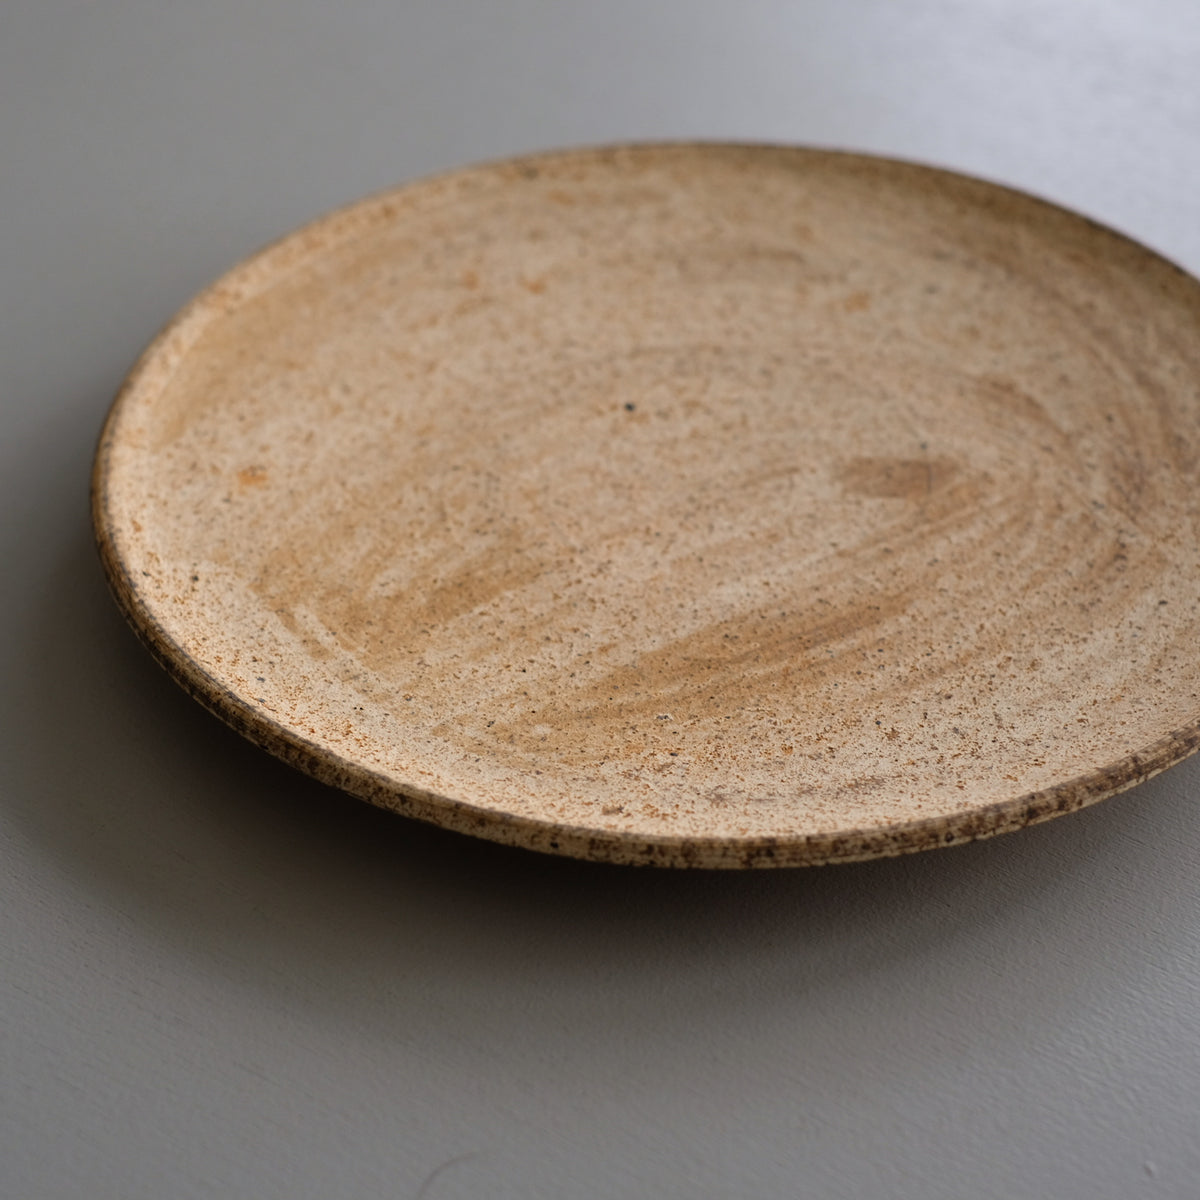 二階堂明弘 やきしめ丸皿 (φ22.8cm) Akihiro Nikaido Yakishime plate (φ22.8cm)